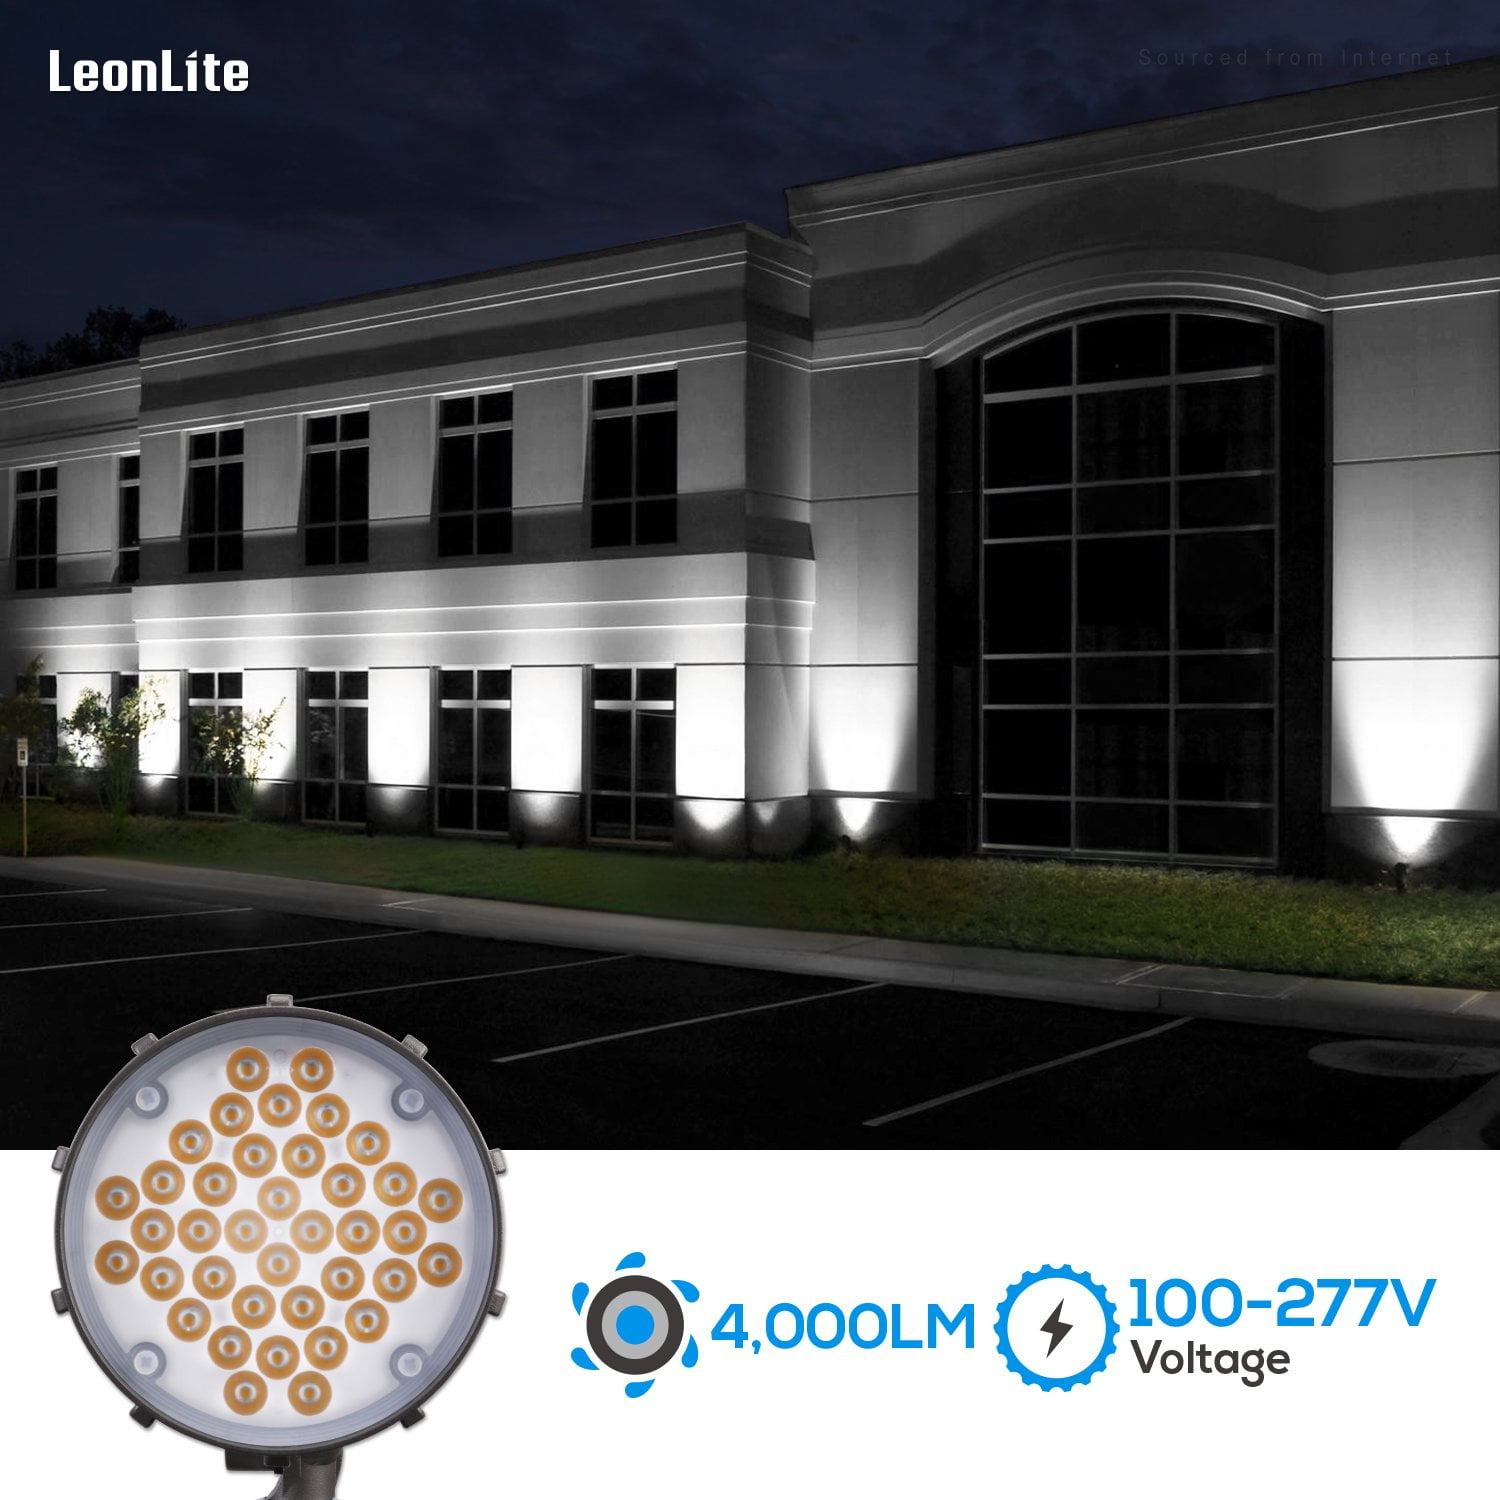 Low Voltage LED Landscape Flood Light - Knuckle Mount - 24 Watt - 2155 -  Lumens - 5000K Daylight - Bronze - 12V